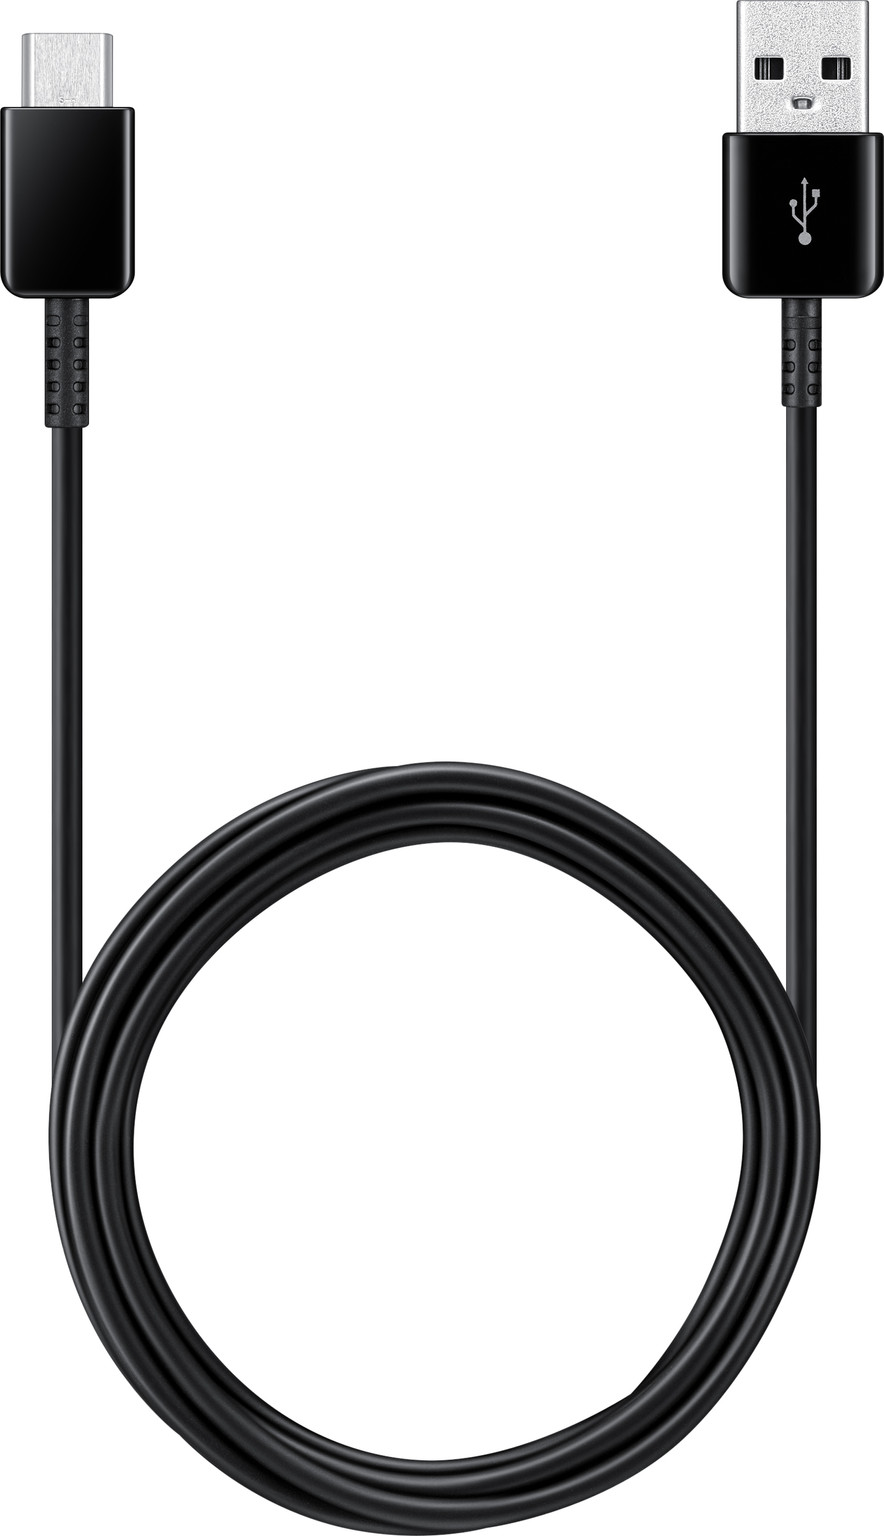 ijzer Laatste Verandert in Samsung Galaxy A8 (2018) Oplaadkabel USB C 2 meter zwart - Gsm-Oplader.nl